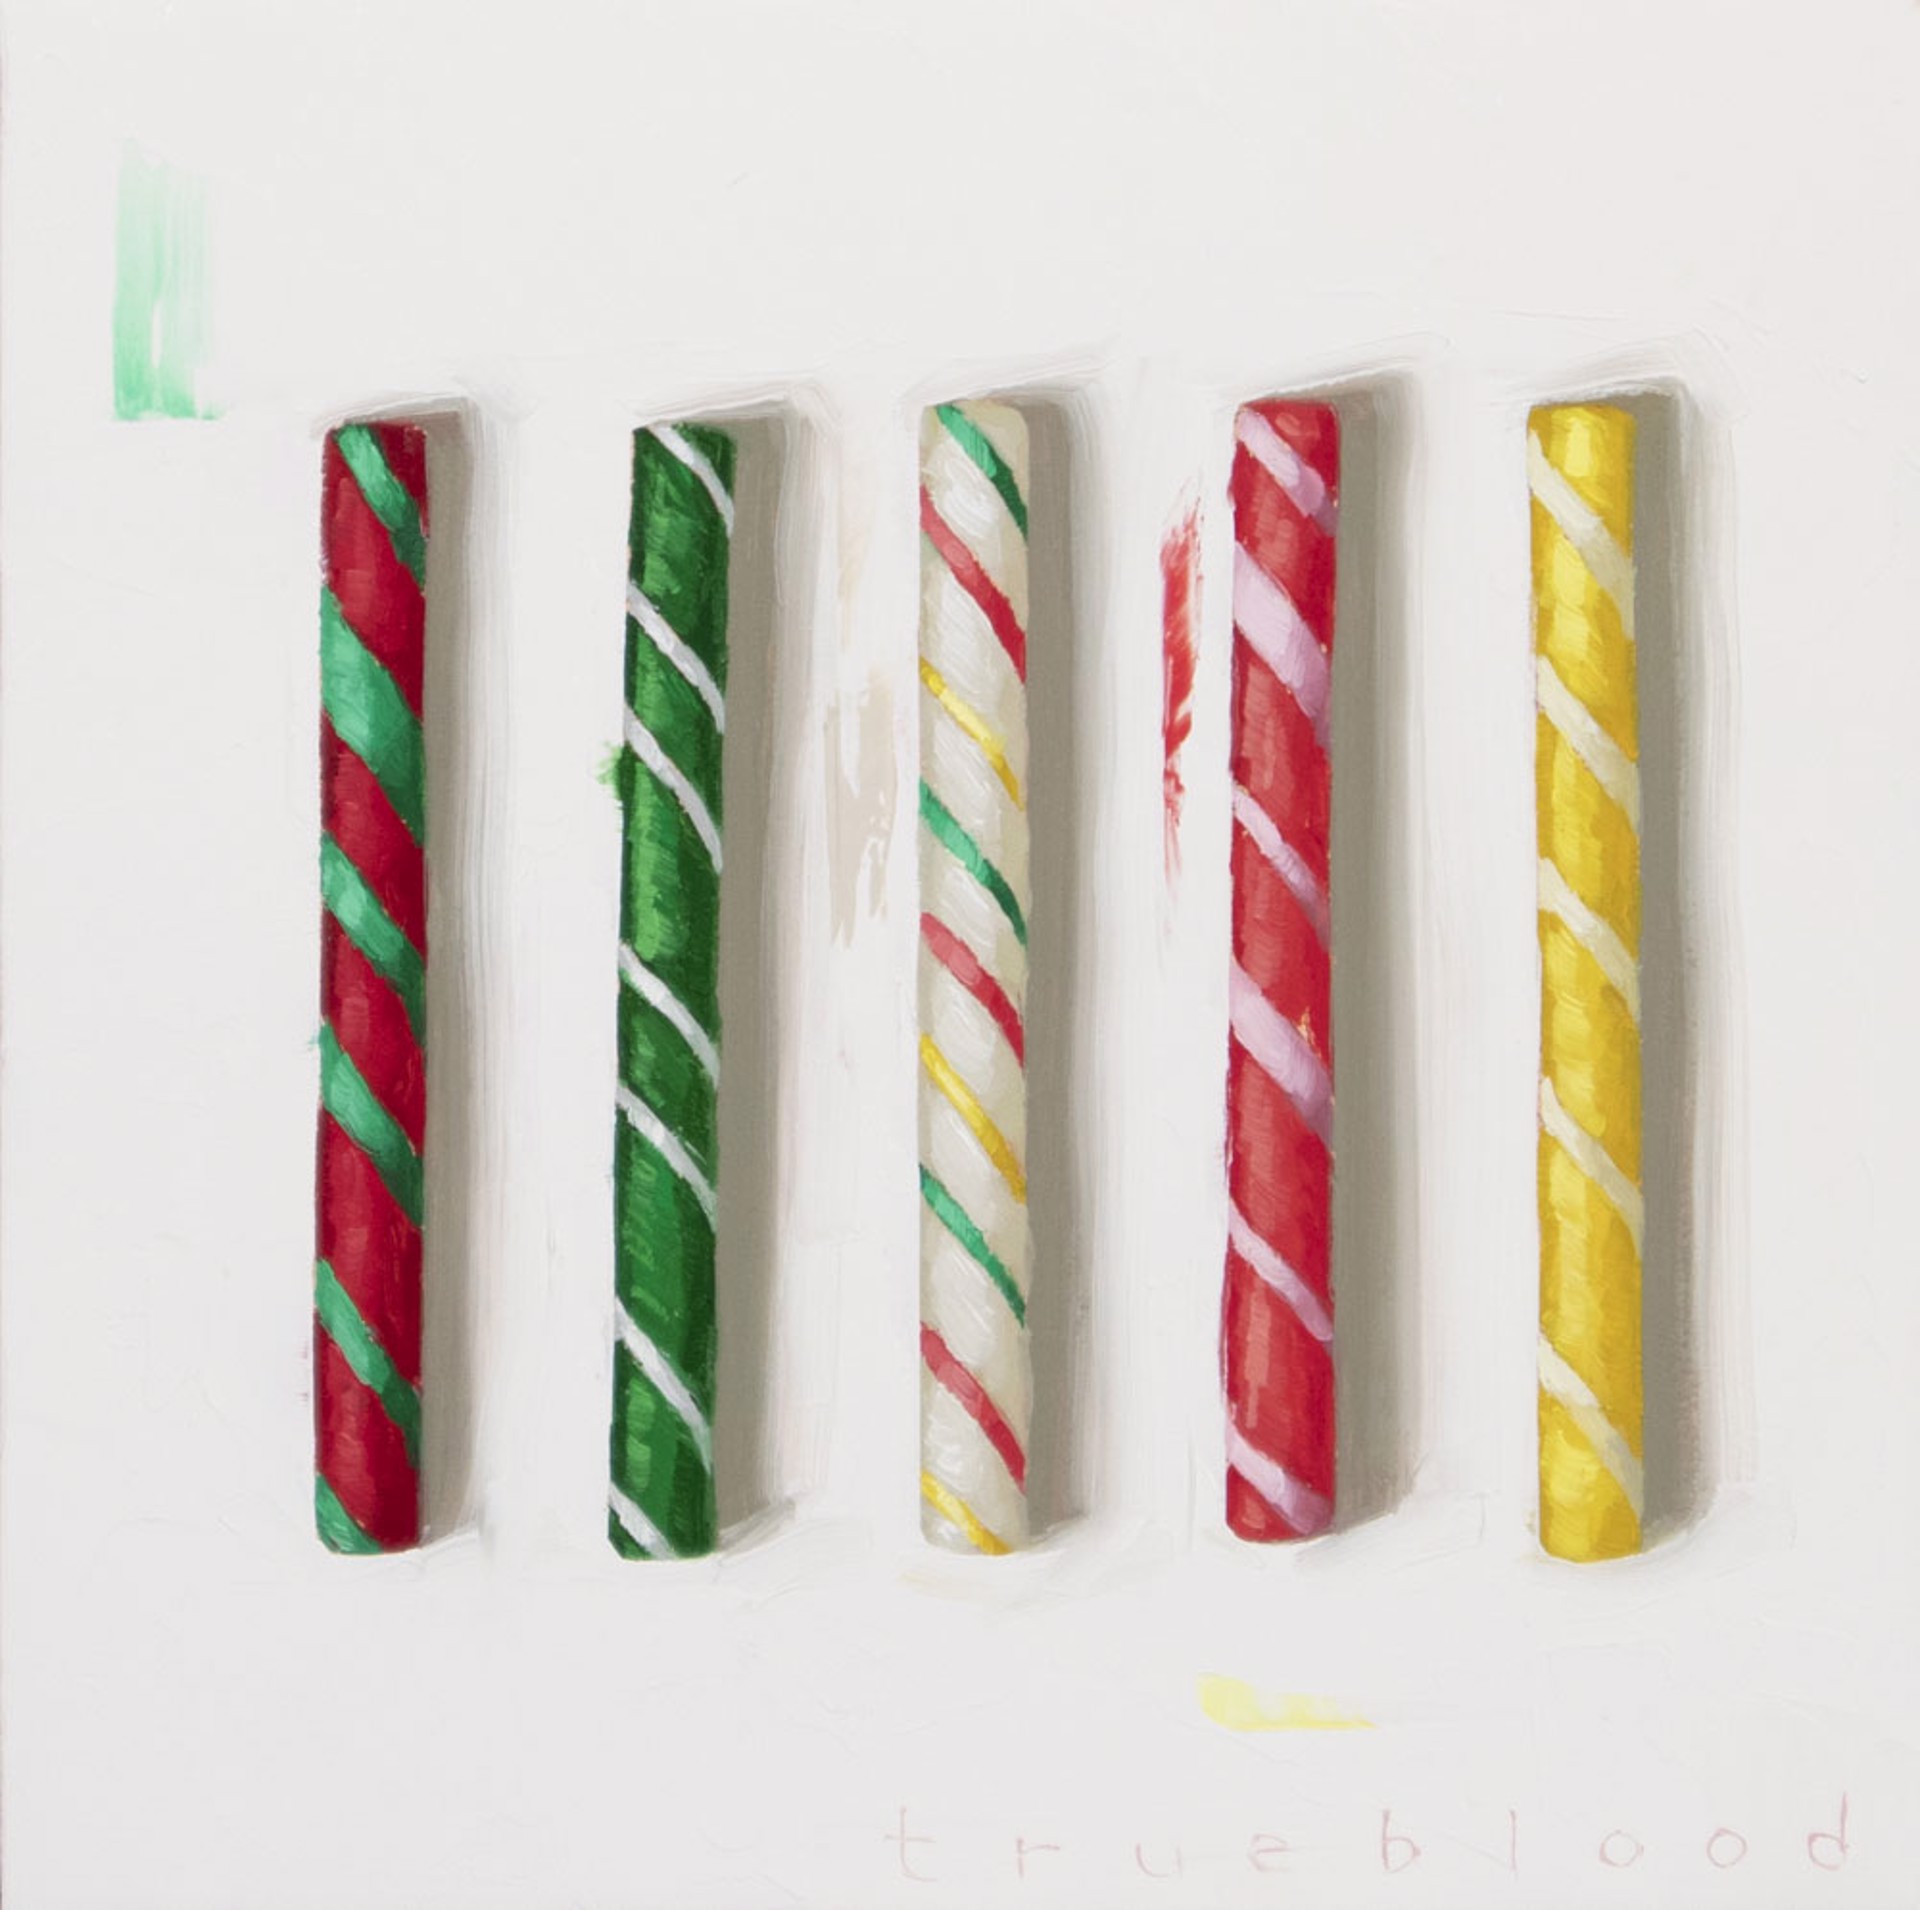 Candy Sticks by Megan Trueblood